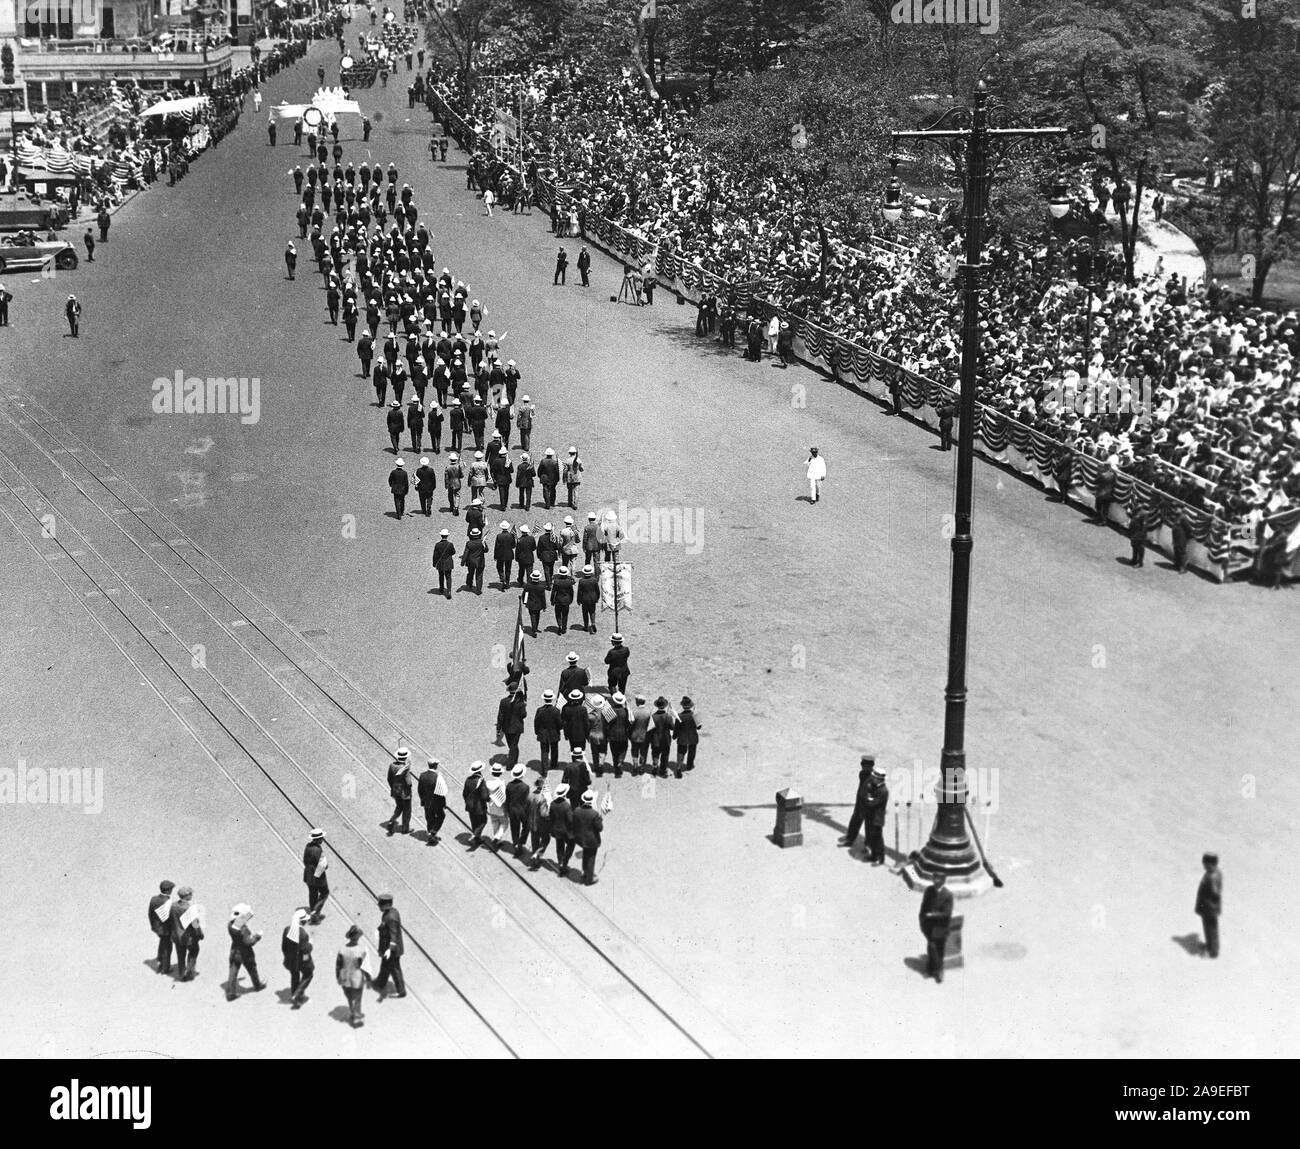 Tag der Unabhängigkeit, 4. Juli 1918 - Parade auf der Fifth Avenue in New York City. Allgemeine Ansicht eines grossen am 4.Juli Parade Bestehen der Überprüfung stand auf 23 St., NEW YORK, Stadt Stockfoto